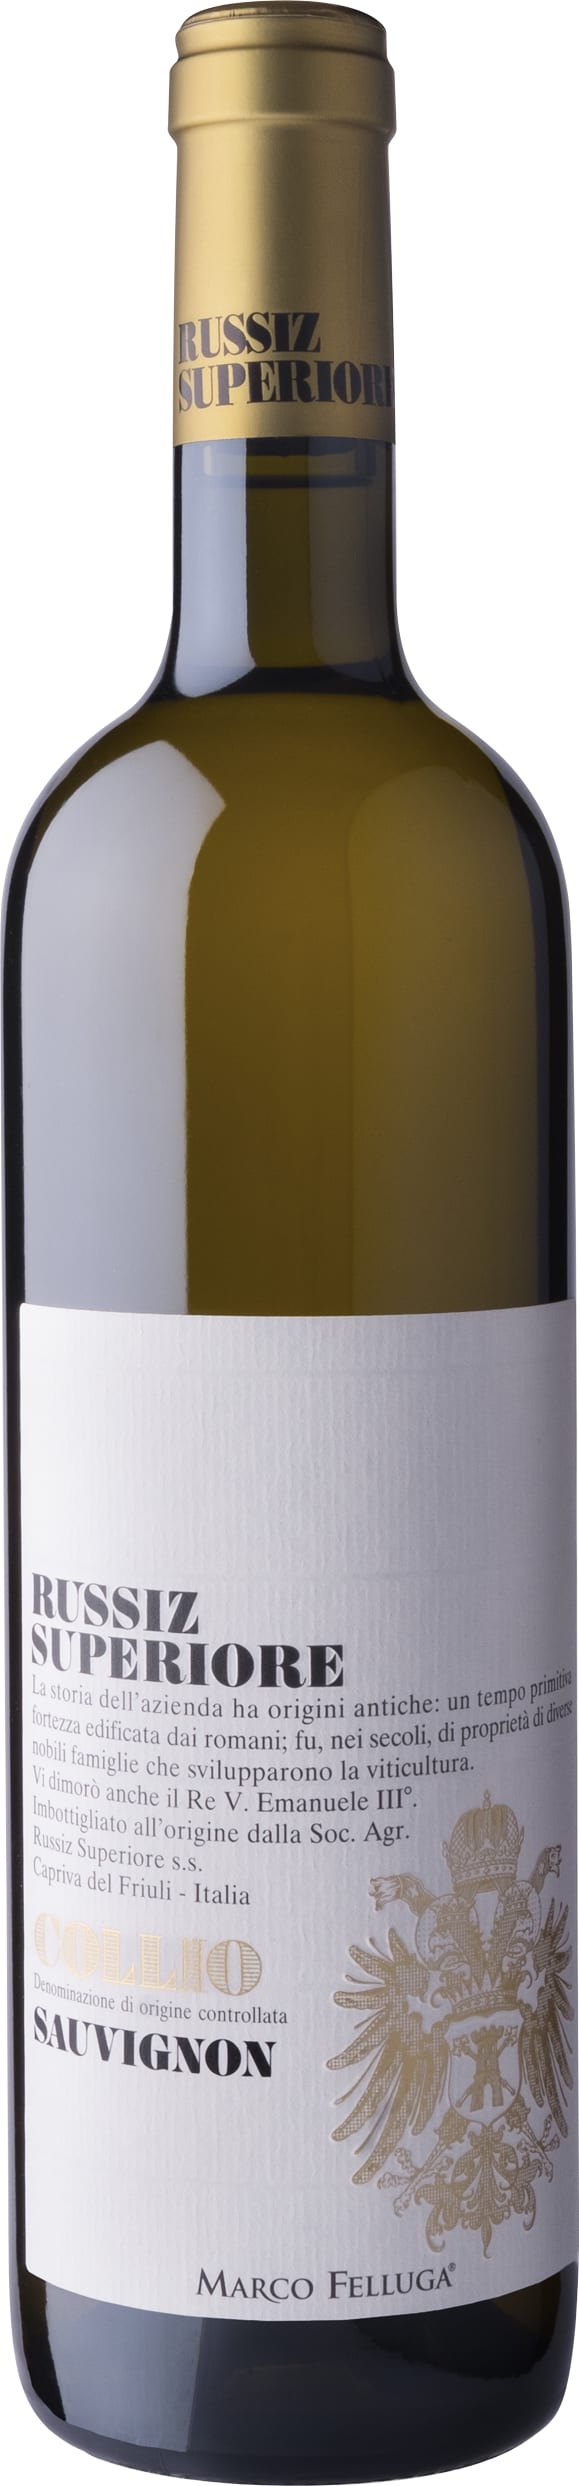 Russiz Superiore Sauvignon Blanc, Collio 2021 75cl - Buy Russiz Superiore Wines from GREAT WINES DIRECT wine shop